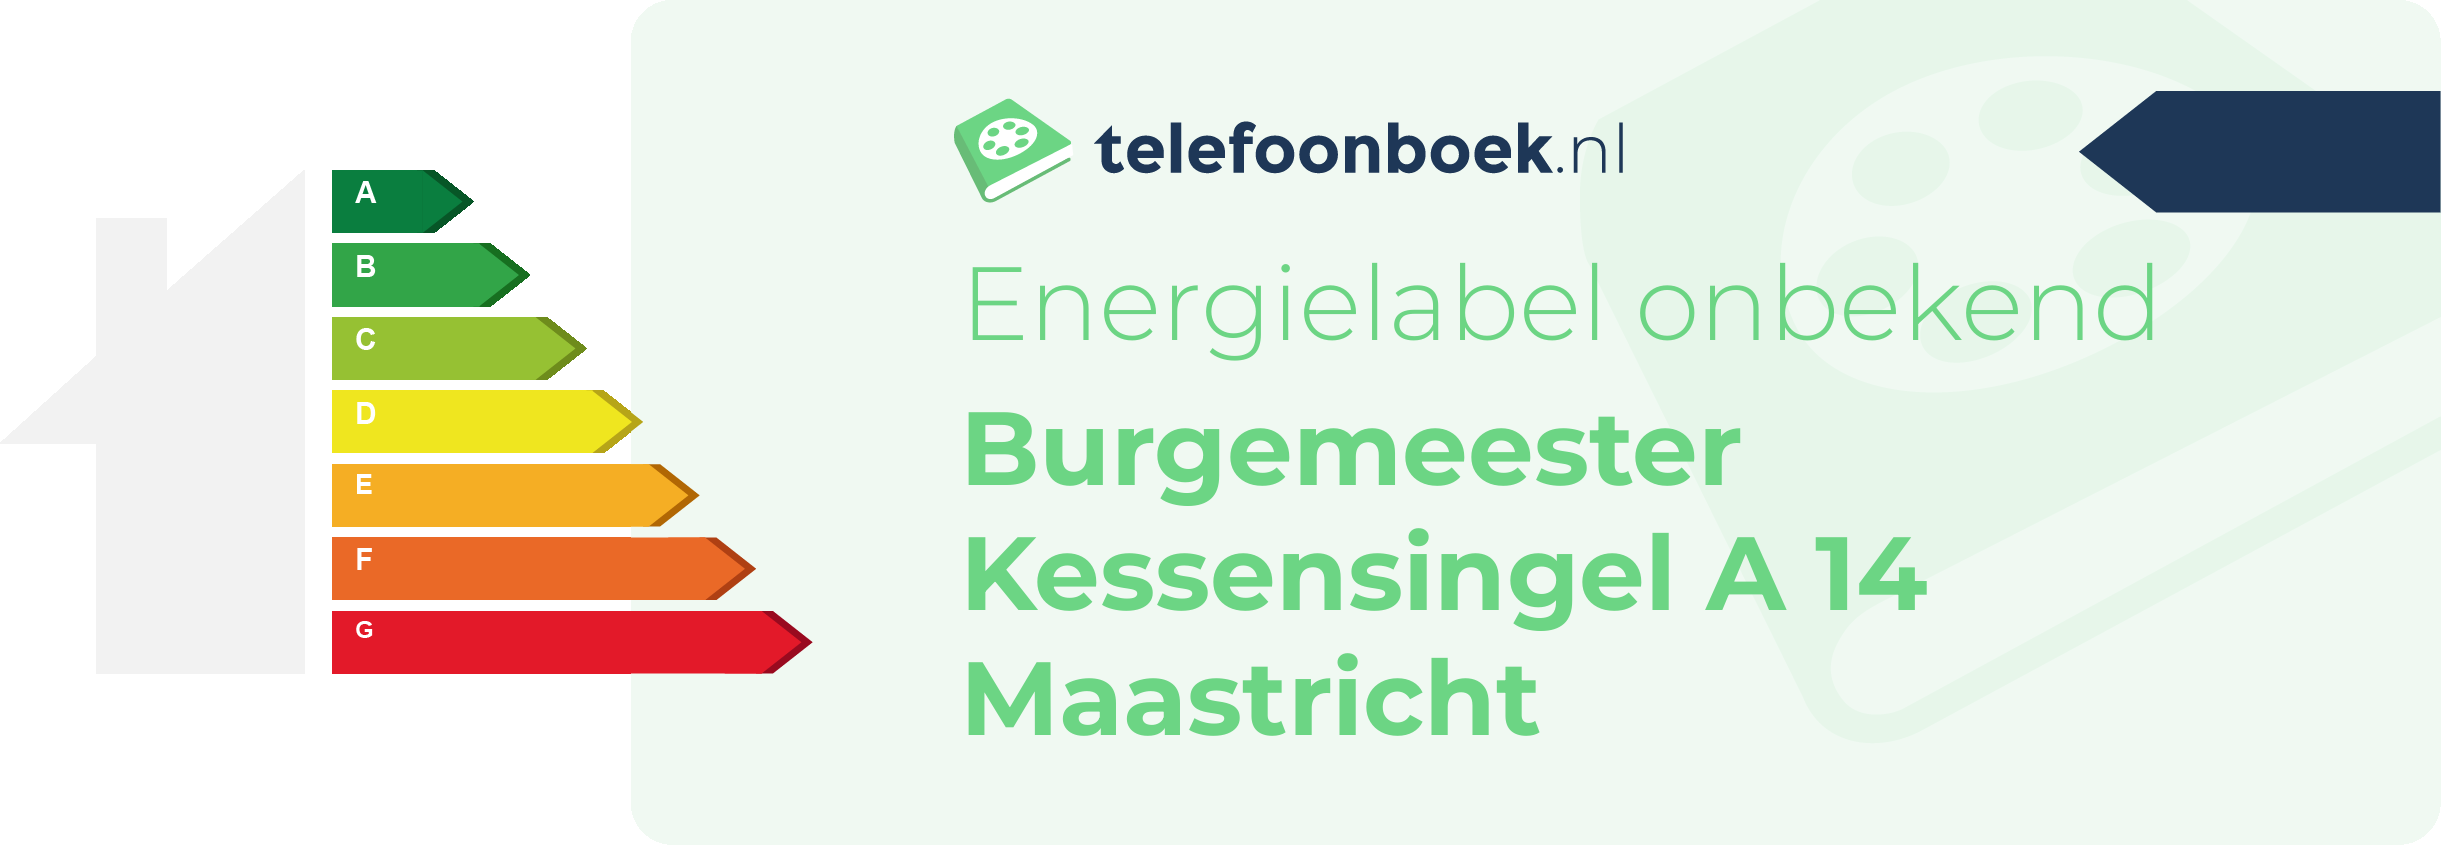 Energielabel Burgemeester Kessensingel A 14 Maastricht